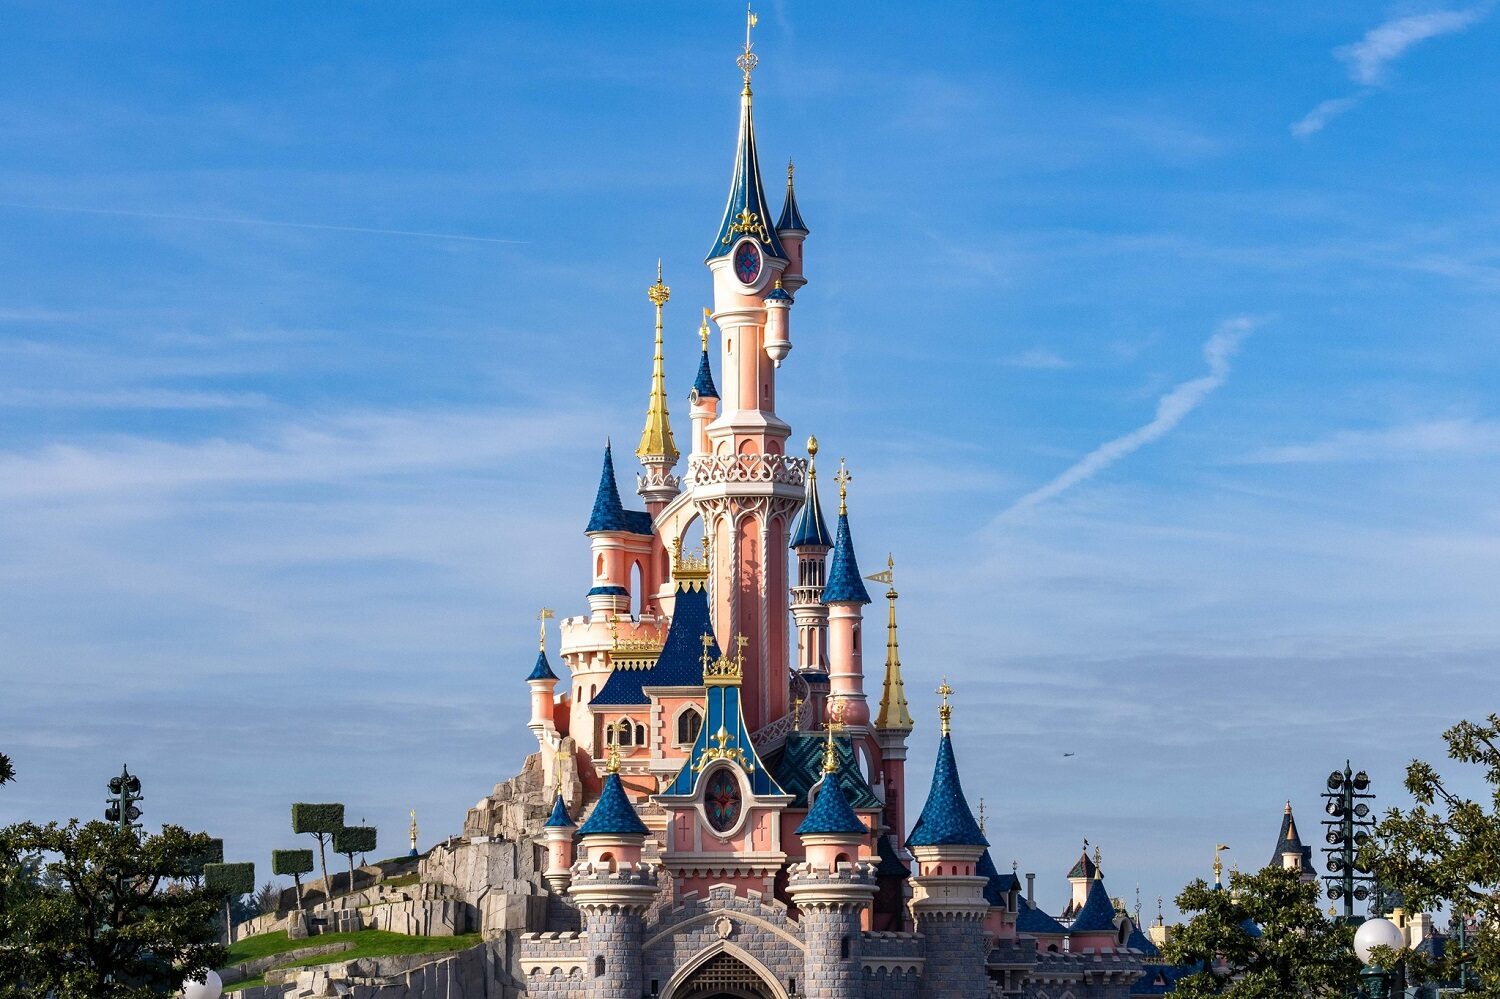 Castelul de la Disneyland Paris, cu turnuti inalte, ca din povești, pe fundalul unui cer albastru